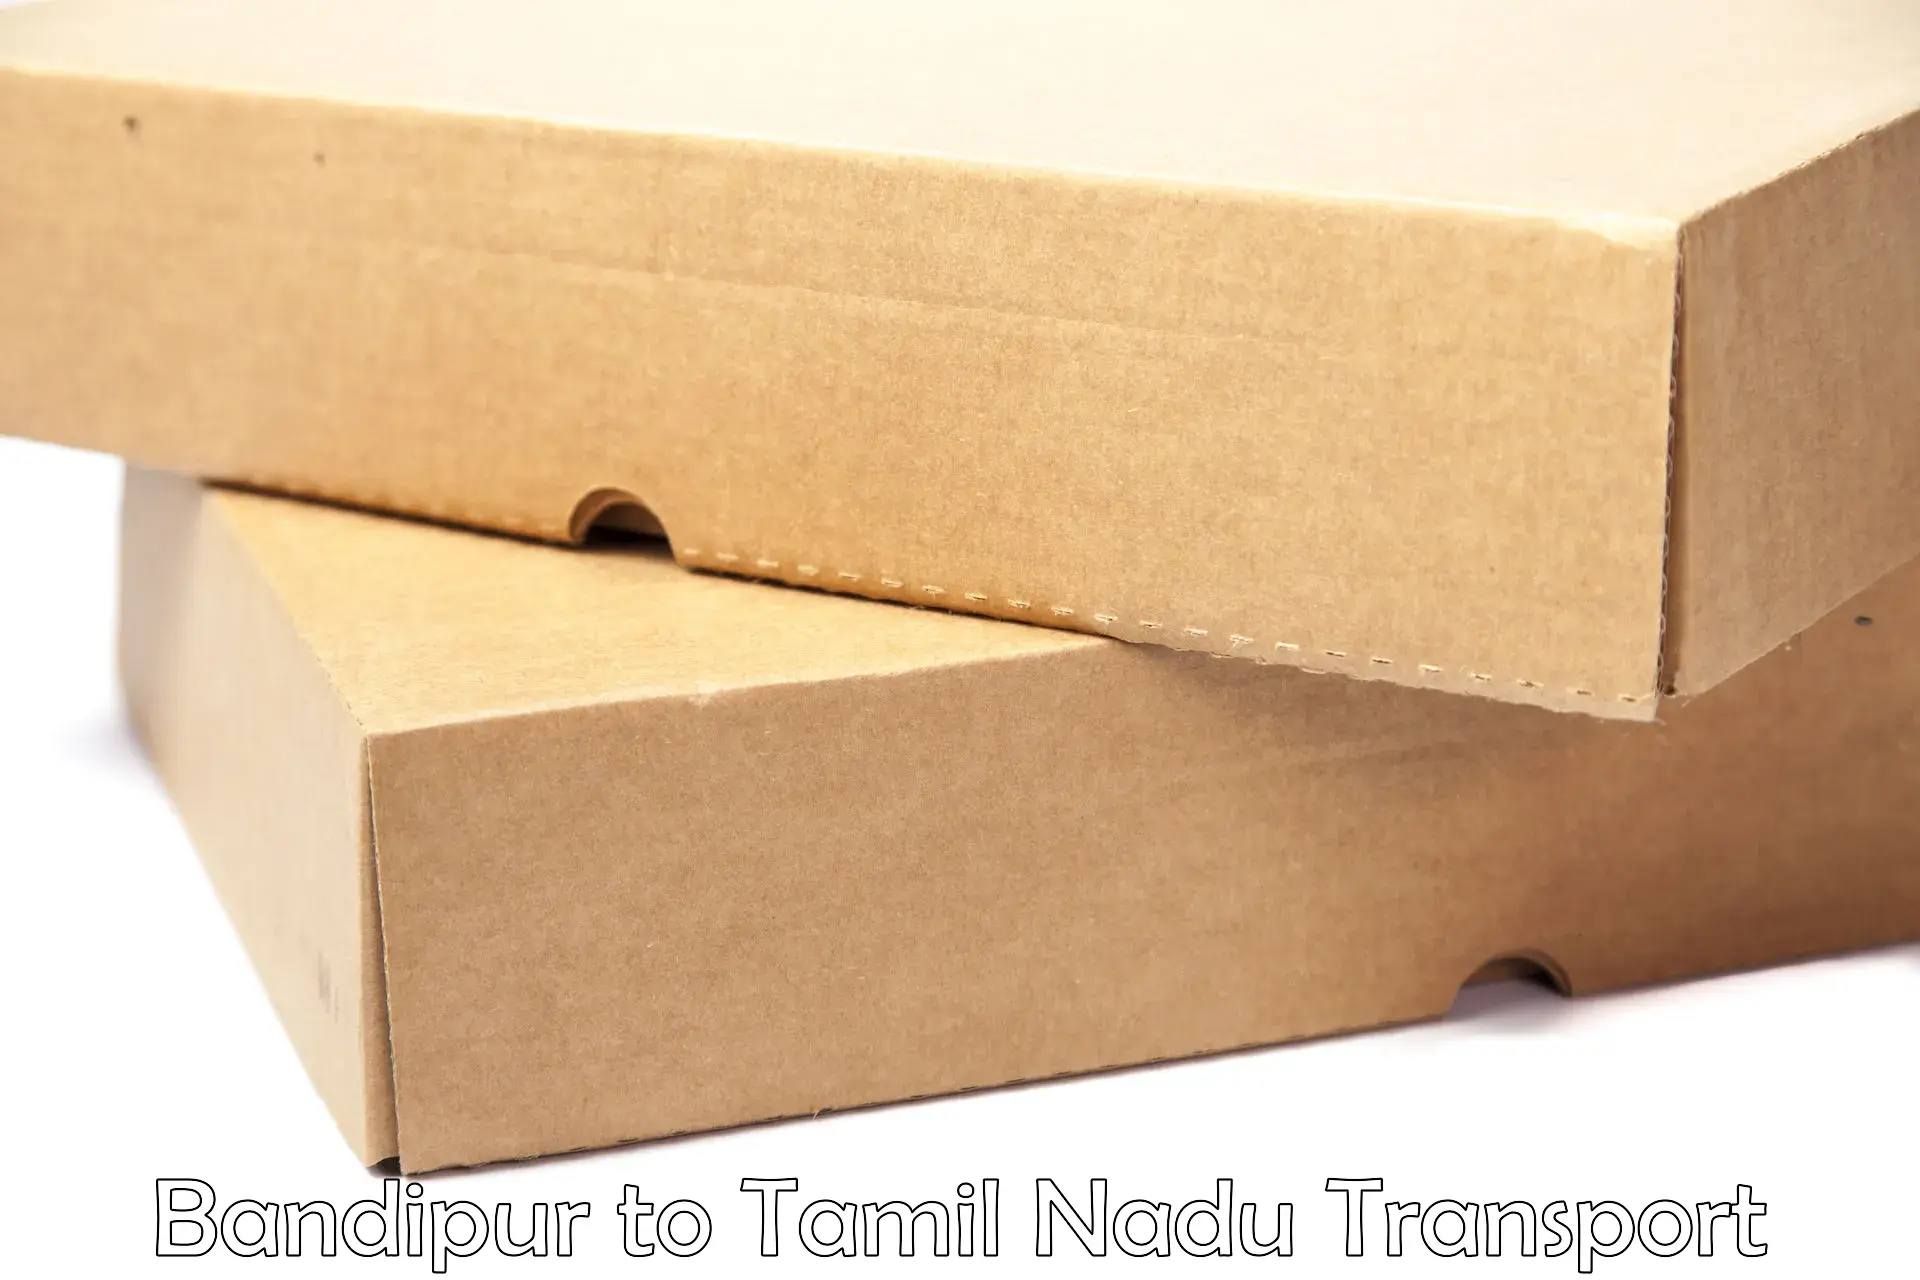 Two wheeler parcel service Bandipur to Perambalur